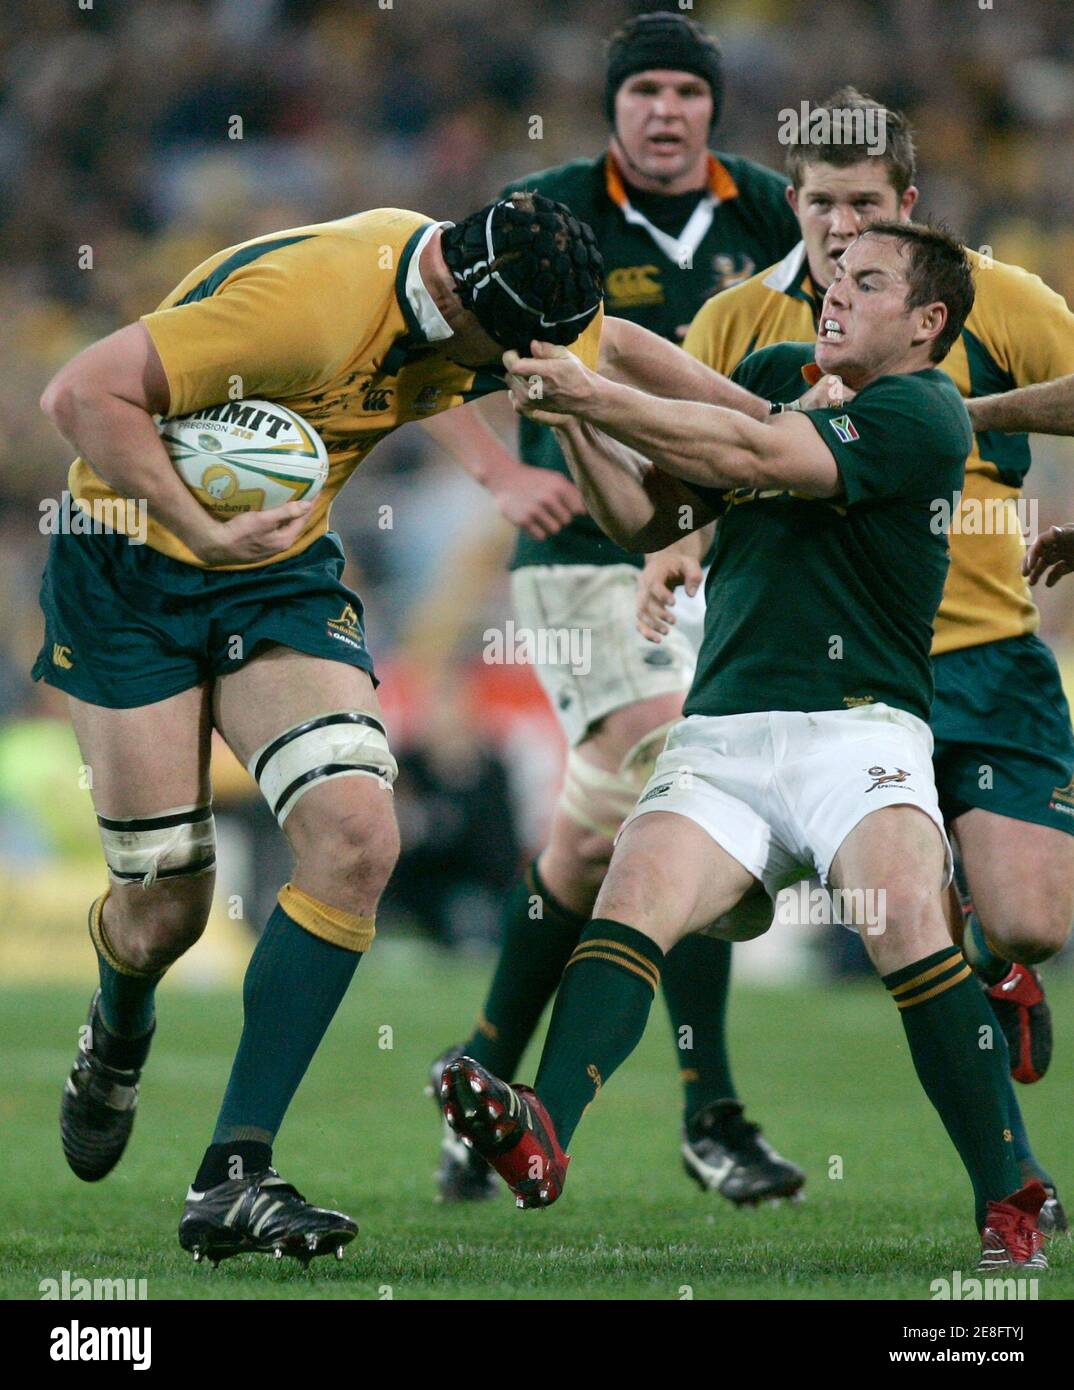 Südafrikas Butch James (R) befasst sich mit Australiens Daniel Vickerman (L) durch die Kopfbedeckung während ihrer Tri-Nations Rugby union Testspiel in Sydney 5. August 2006.  REUTERS / Willen Burgess (Australien) Stockfoto